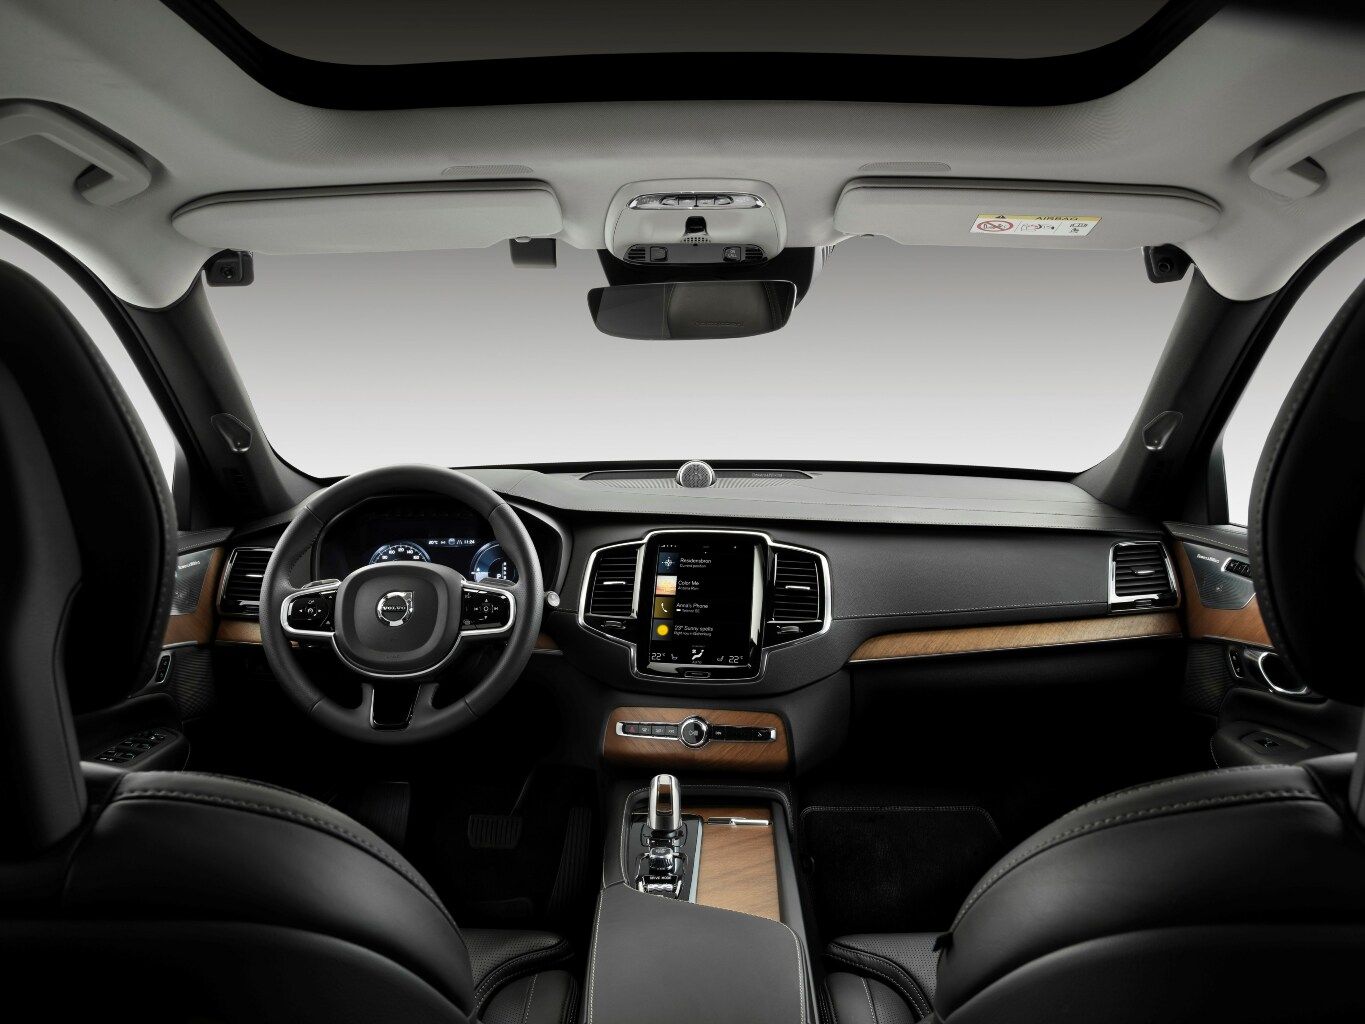 https://media.leasingtime.de/cms/ID980_Ein-virtueller-Beifahrer-der-auf-den-Fahrer-achtet-Volvo-will-mit-neuen-Systemen-fr-noch-mehr-Sicherheit_h1024.jpg